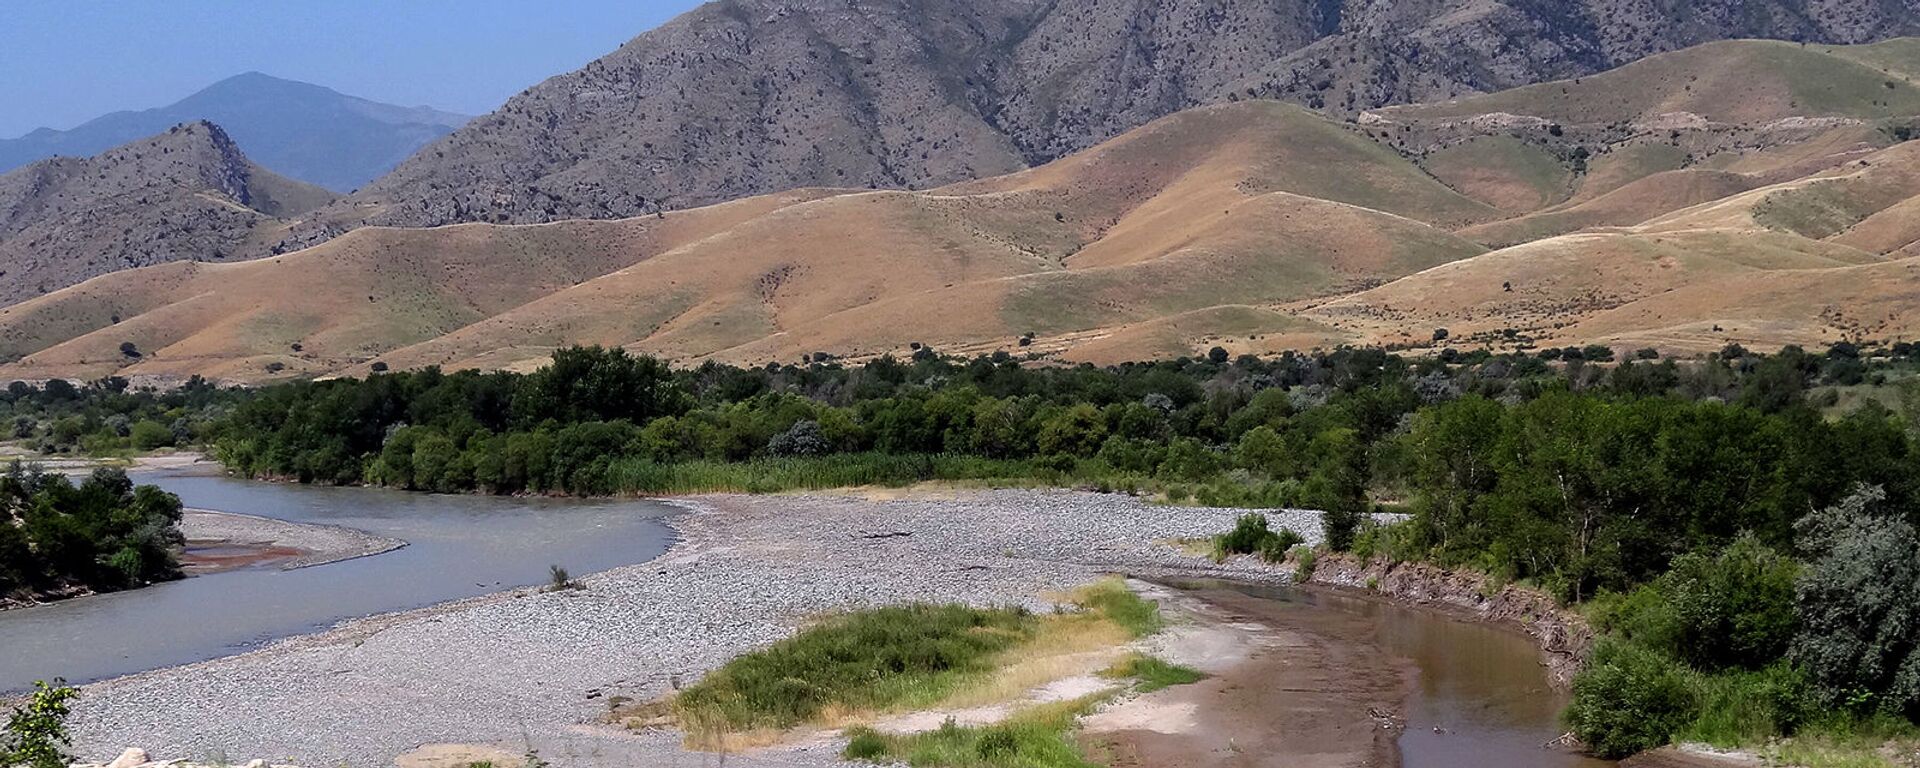 Արաքս գետը Արցախի, Իրանի ու Ադրբեջանի սահմանին - Sputnik Արմենիա, 1920, 20.09.2021